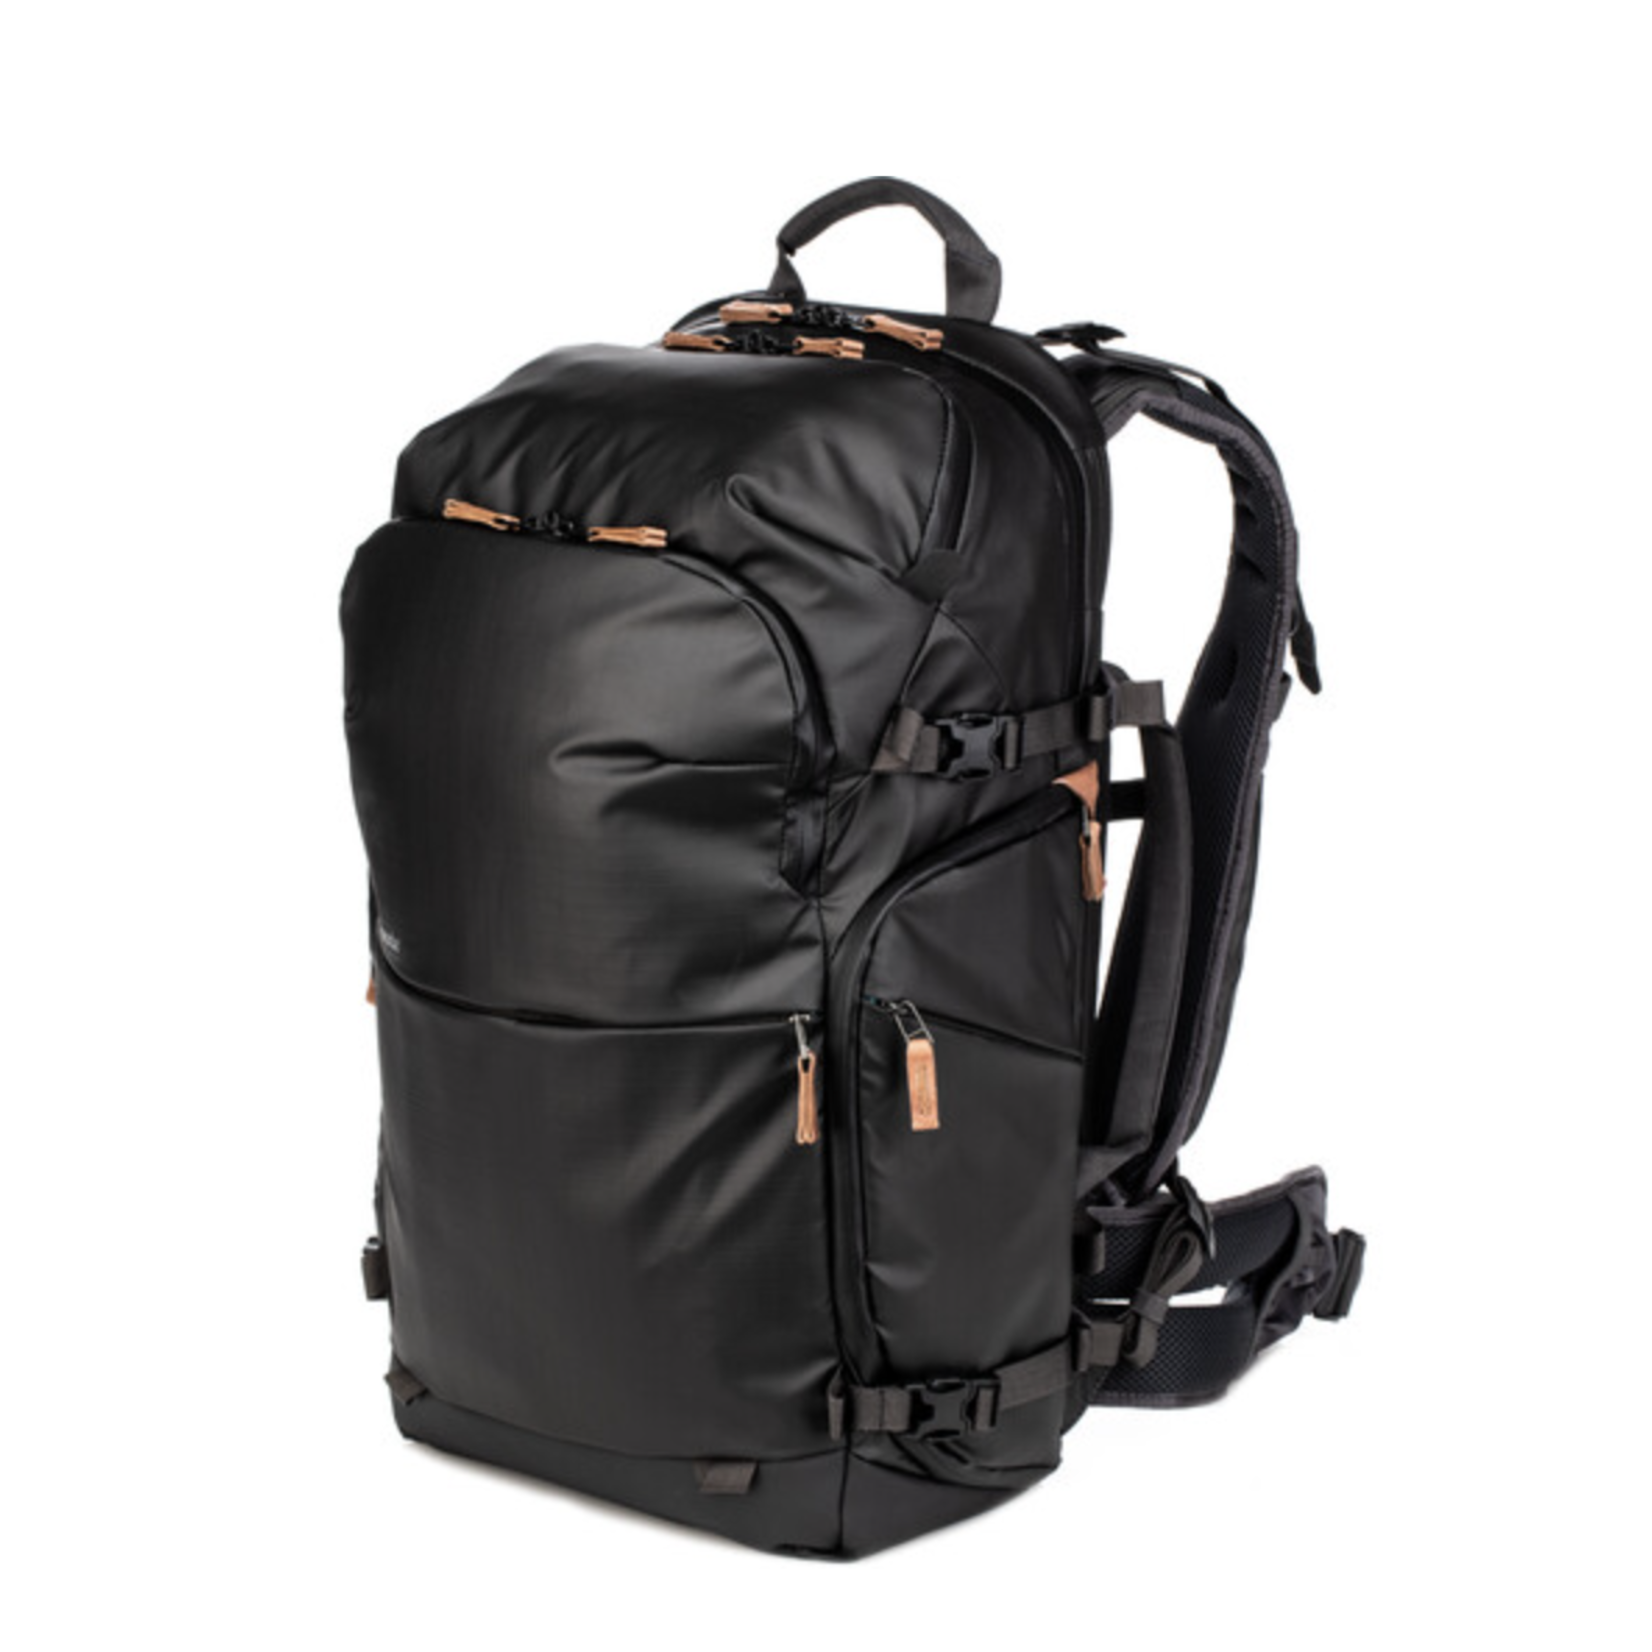 Shimoda Shimoda Designs Explore v2 30 Backpack Photo Starter Kit (Black)